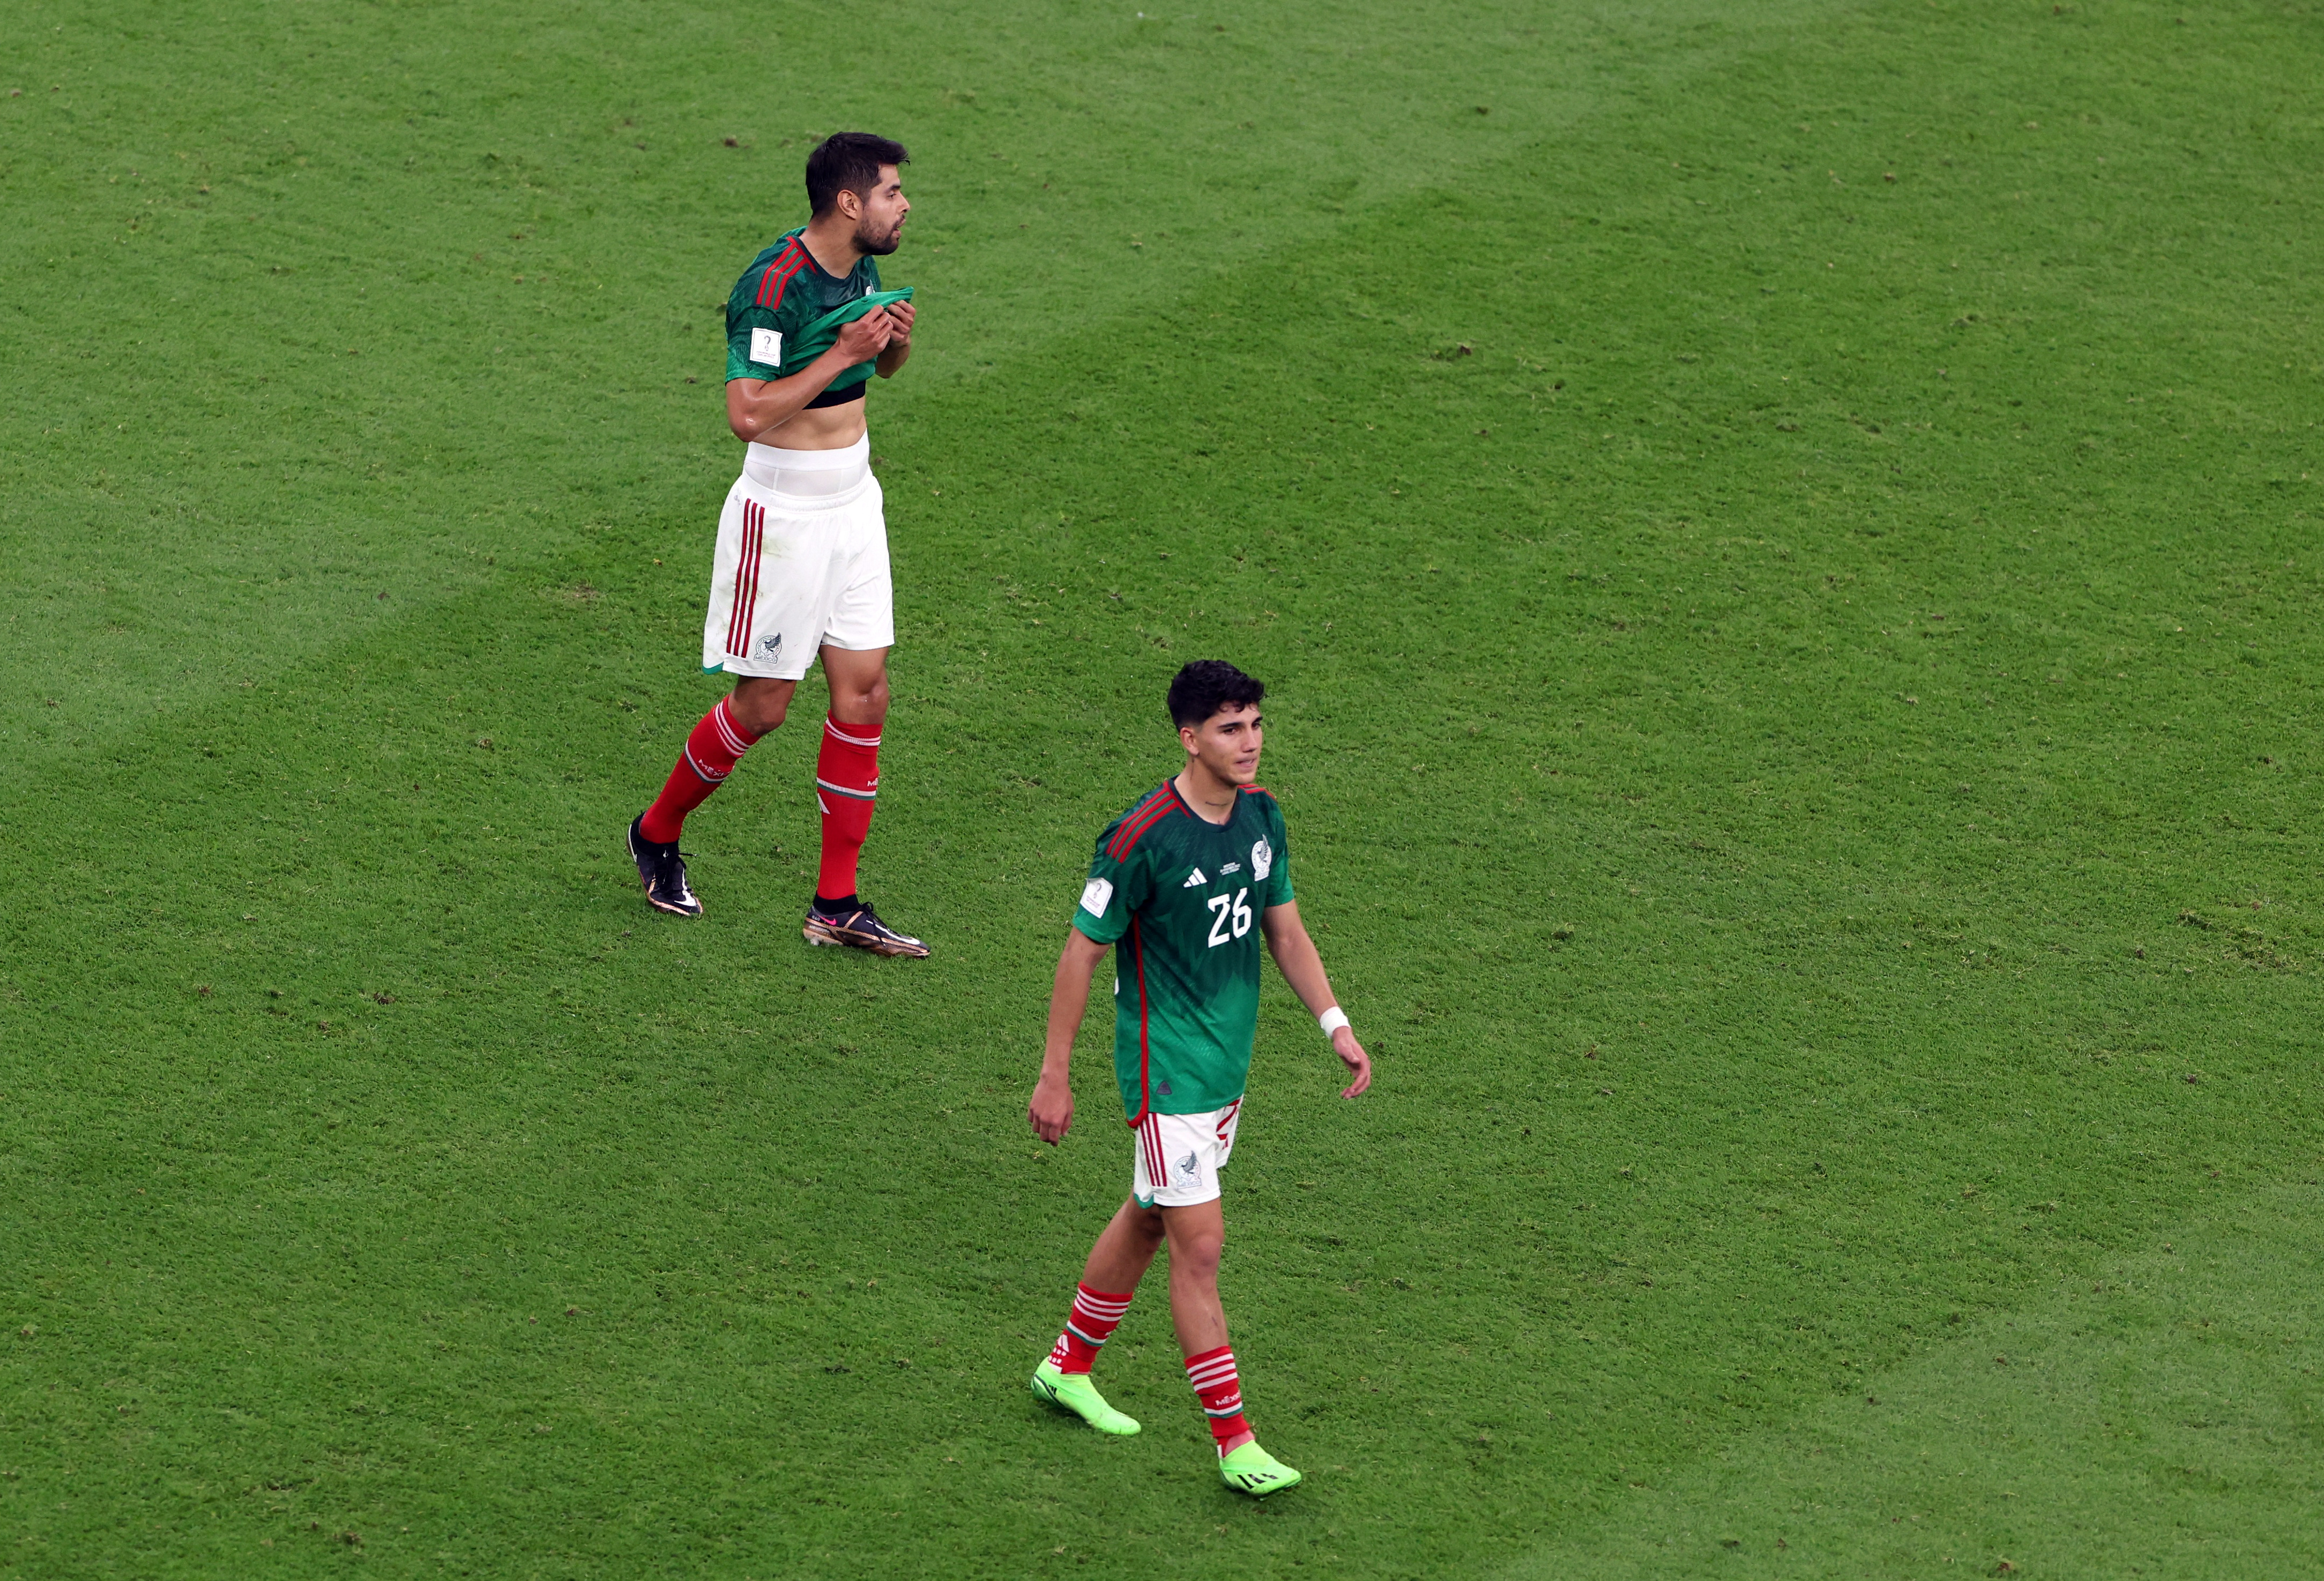 México suma apenas una unidad tras el empate ante Polonia y la derrota con Argentina. REUTERS/Molly Darlington